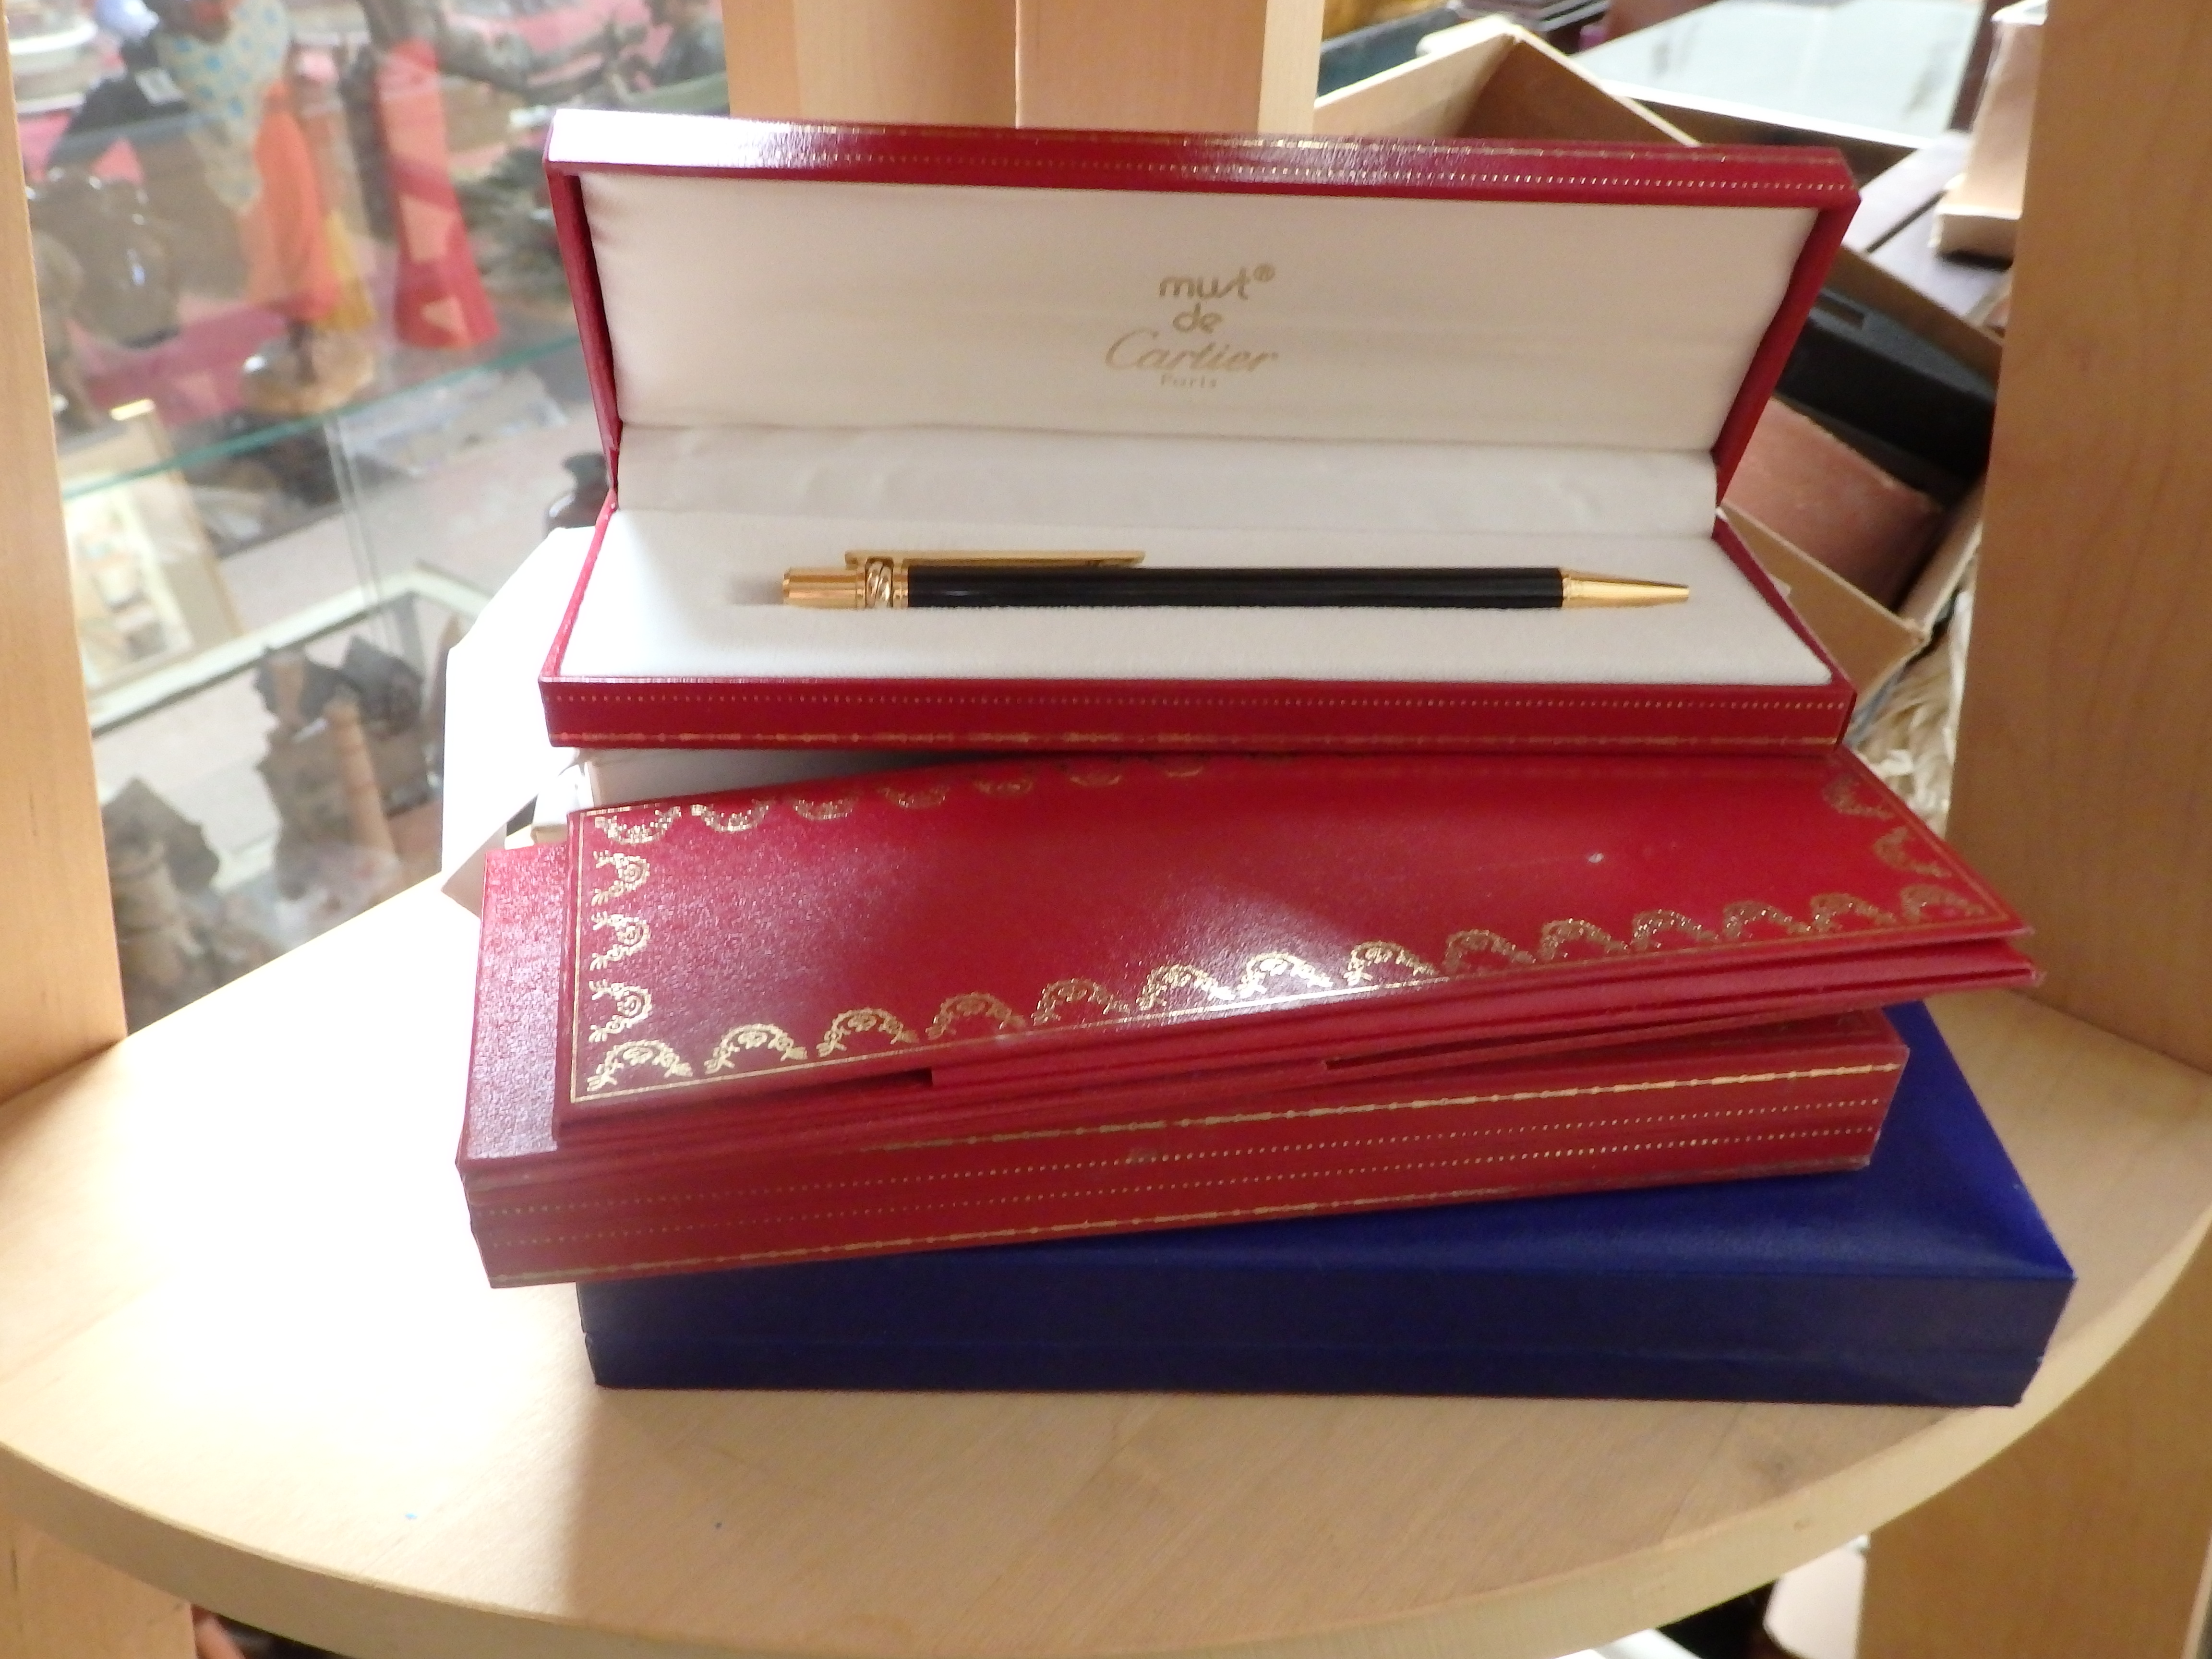 Cartier pens x 4